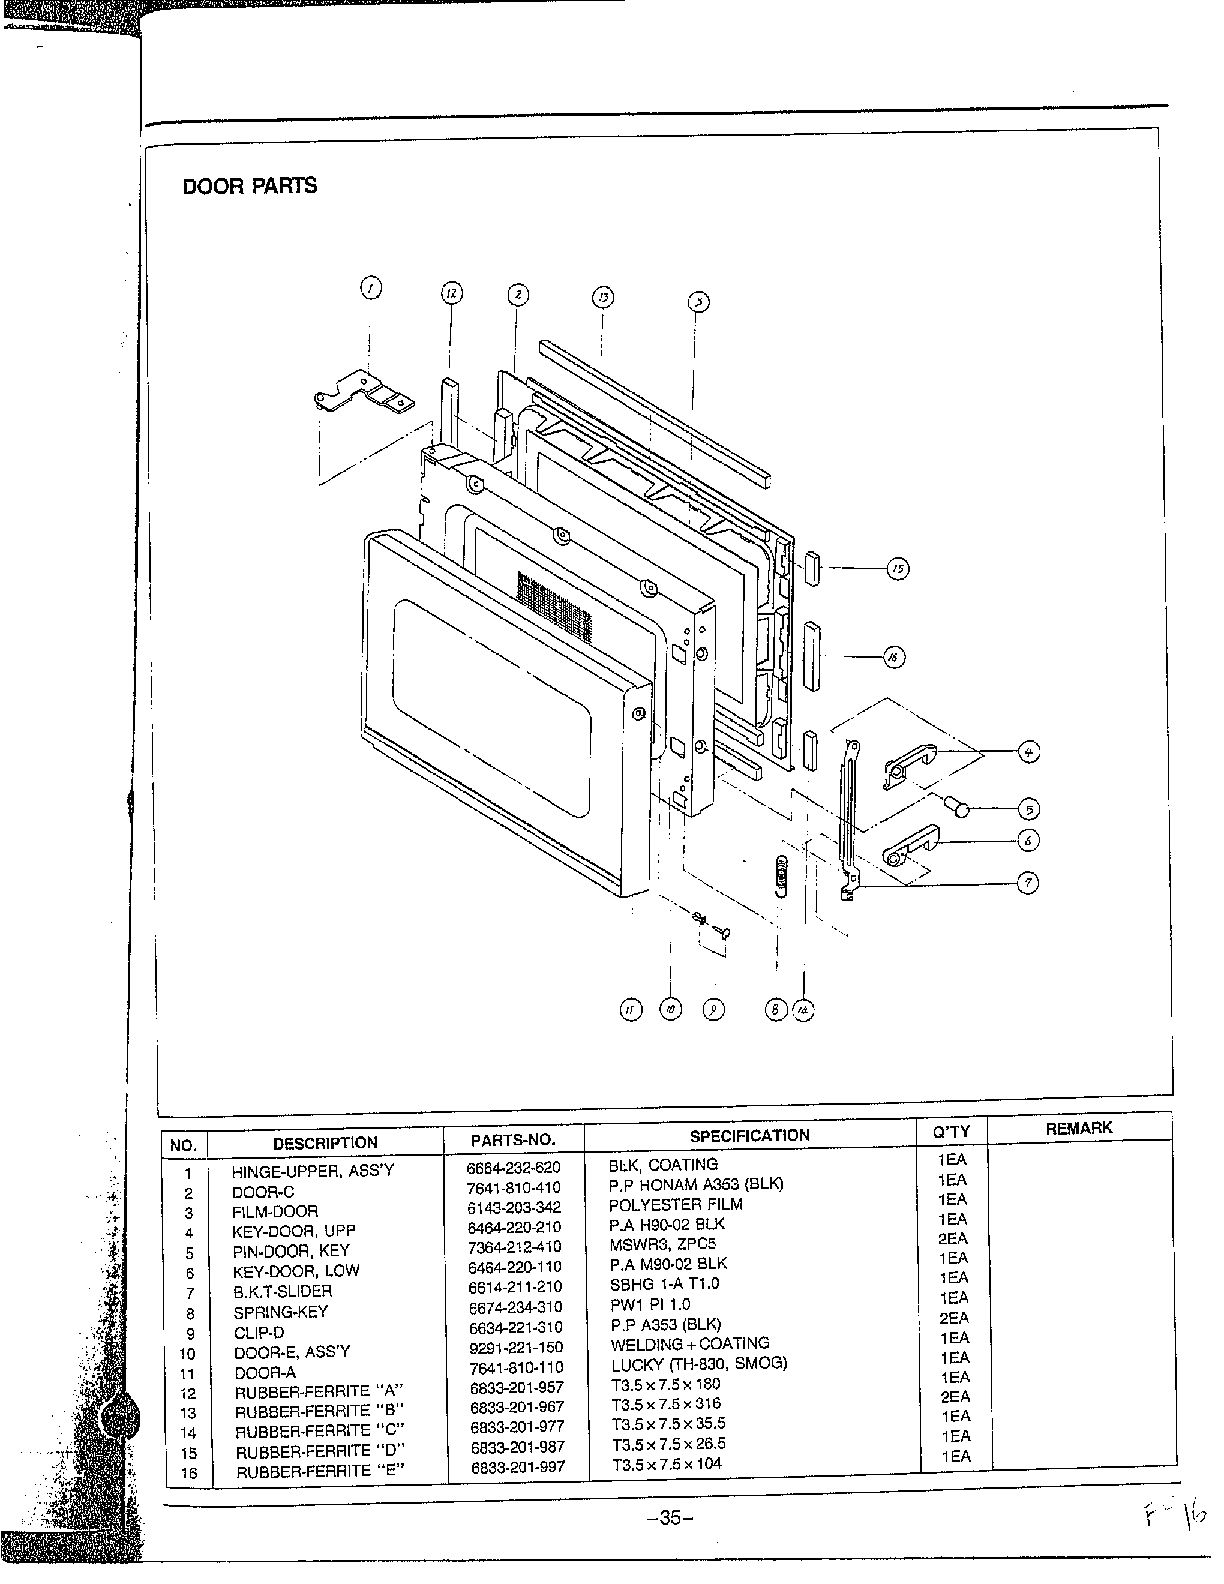 Door Parts Diagram  U0026 Parts List For Model Mw5350wxaa